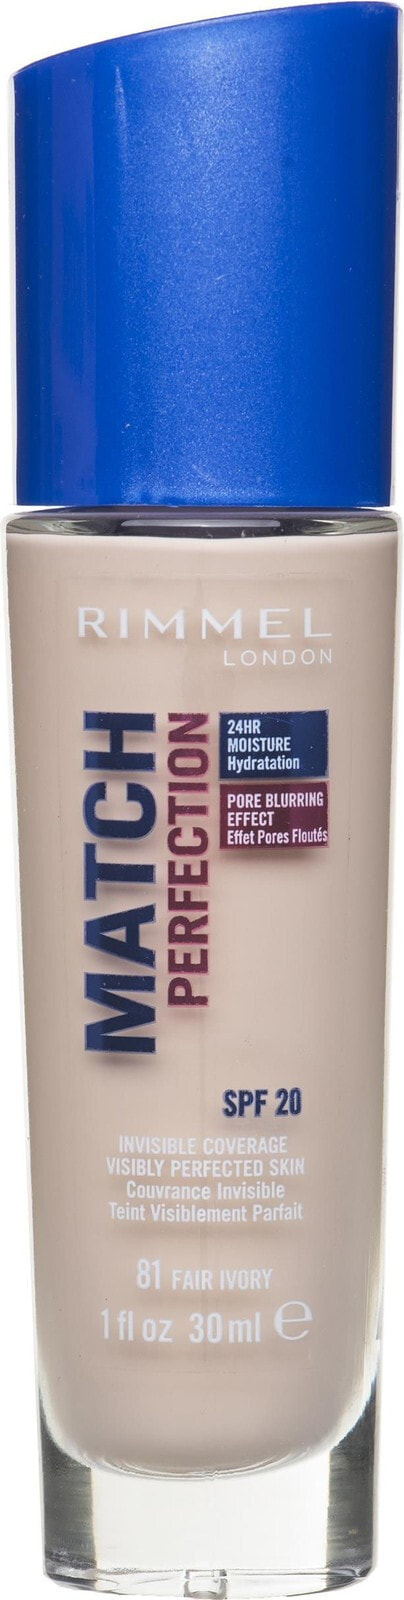 Rimmel Match Perfection Spf20 No.81 Fair Ivory Тональный крем с эффектом мягкого фокуса 30 мл